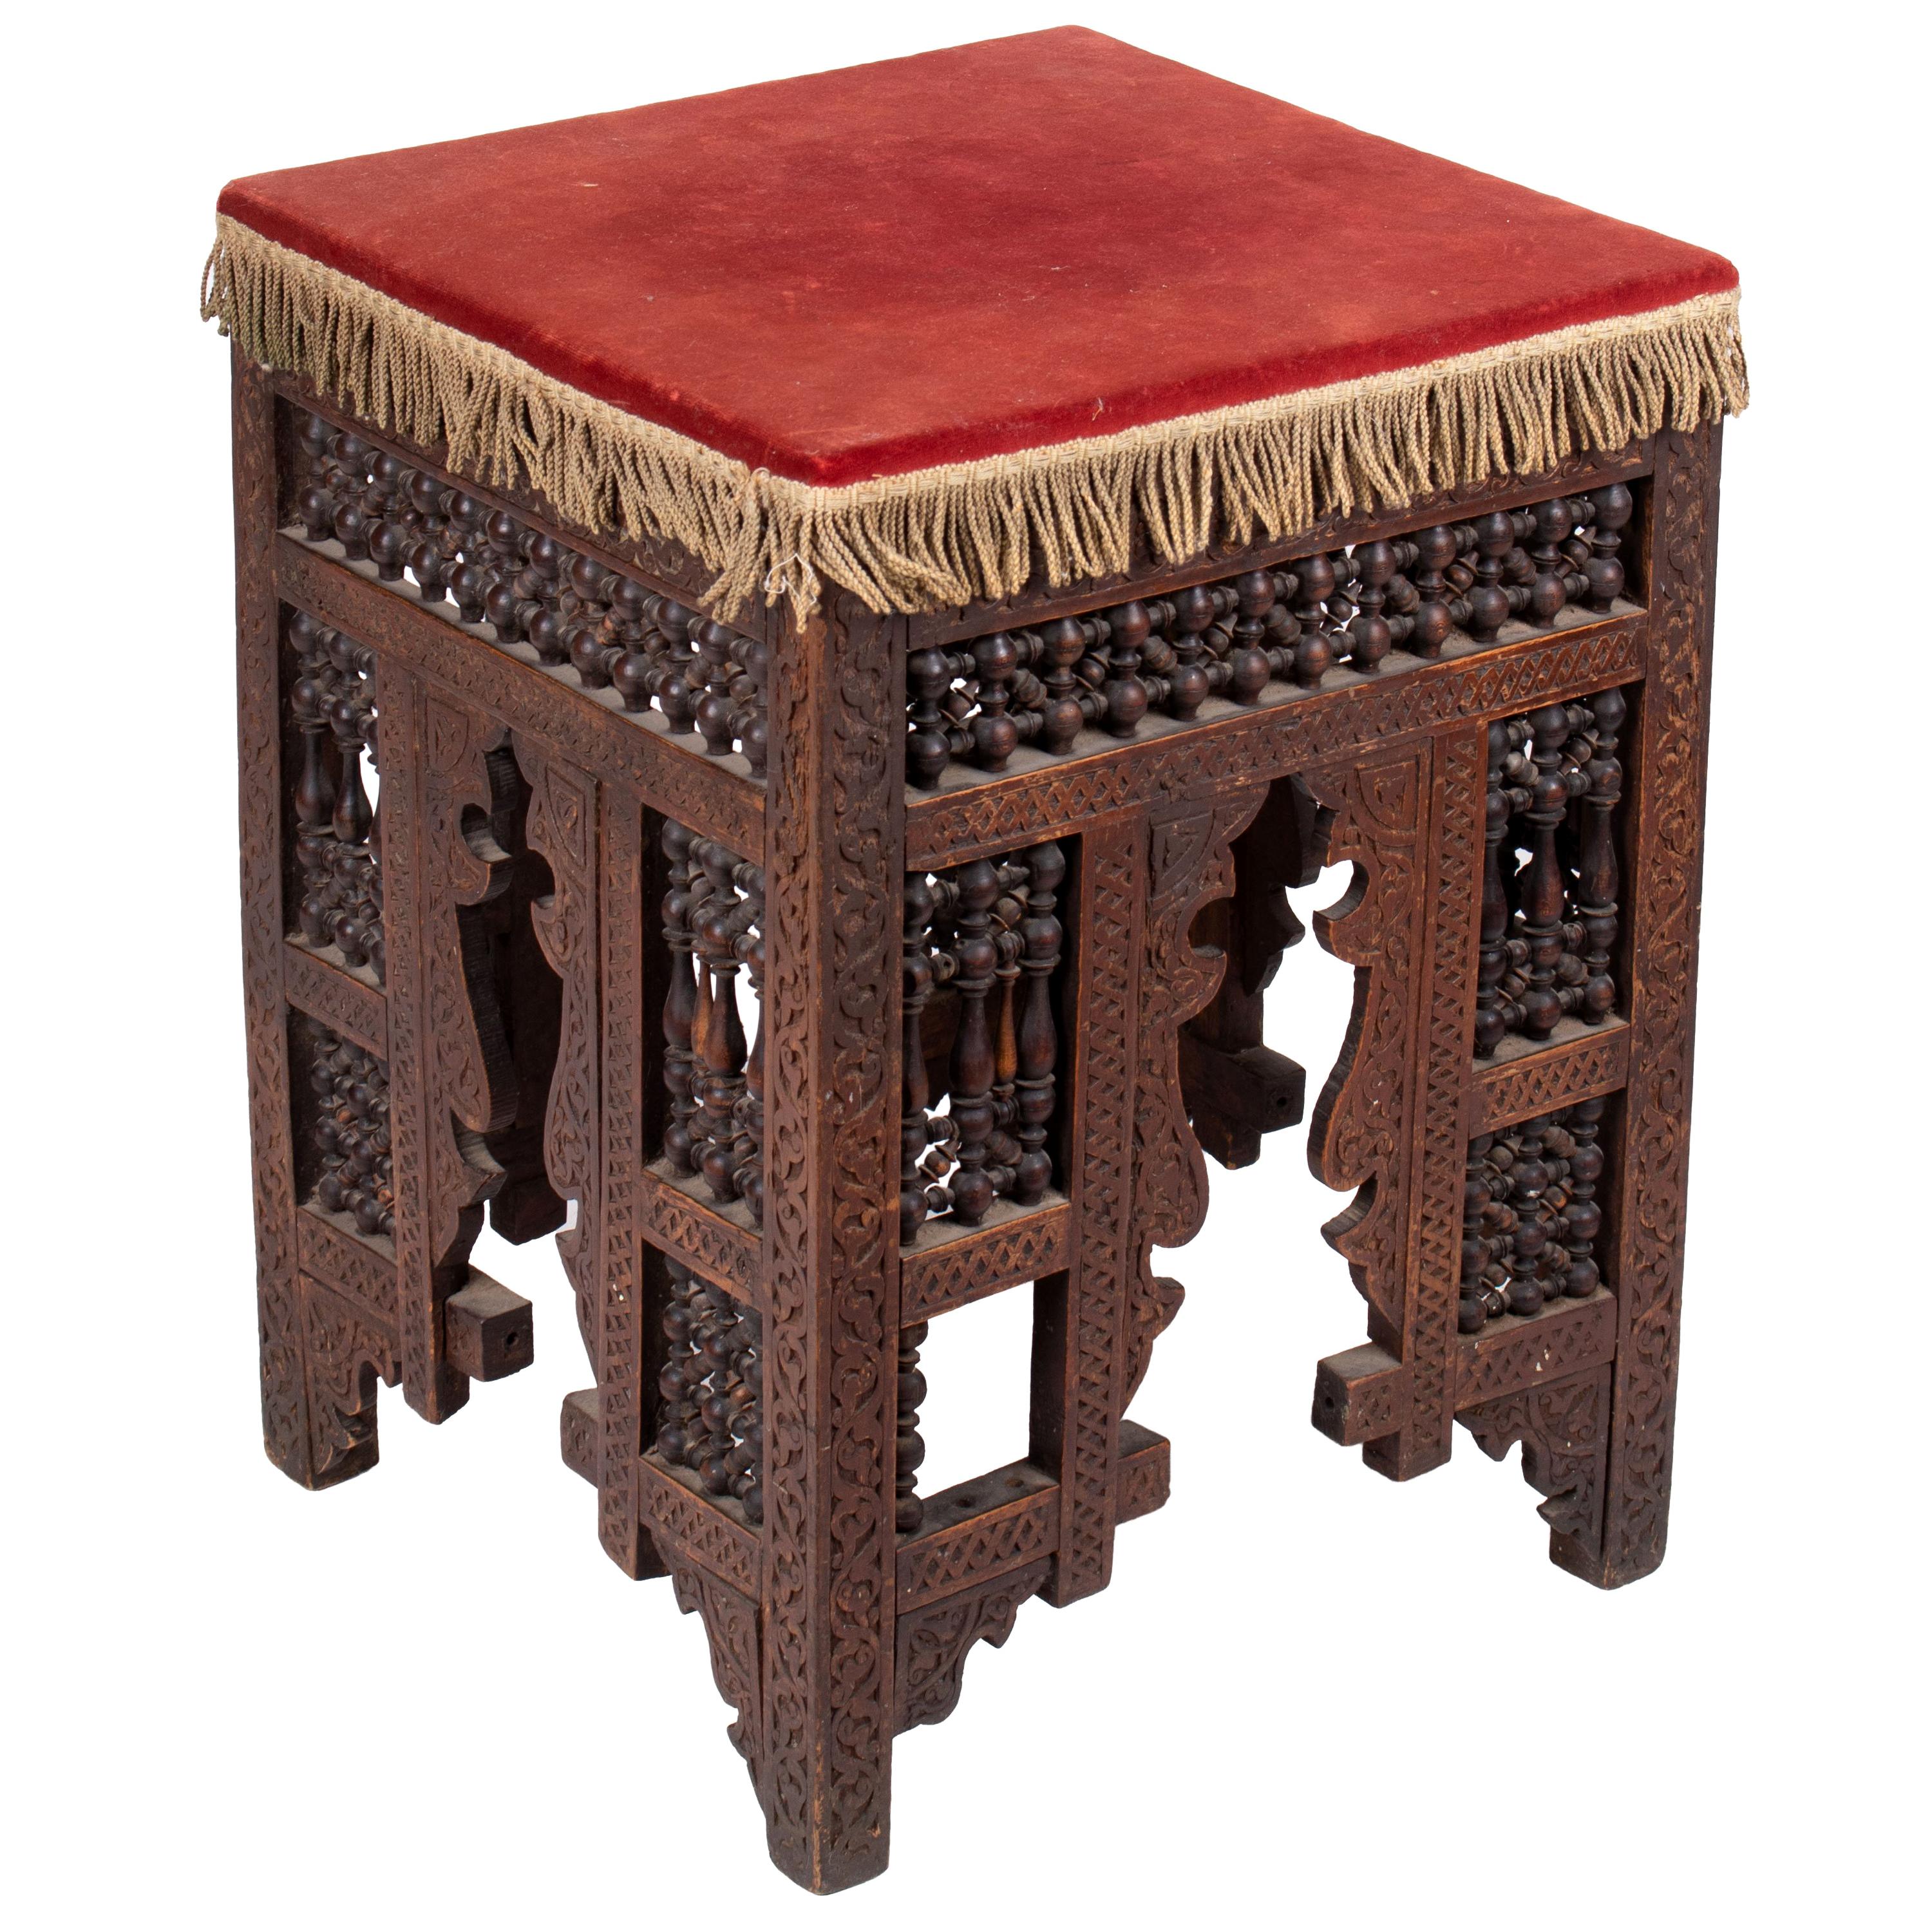 19th Century Turkish Wooden Stool Upholstered in Red Velvet